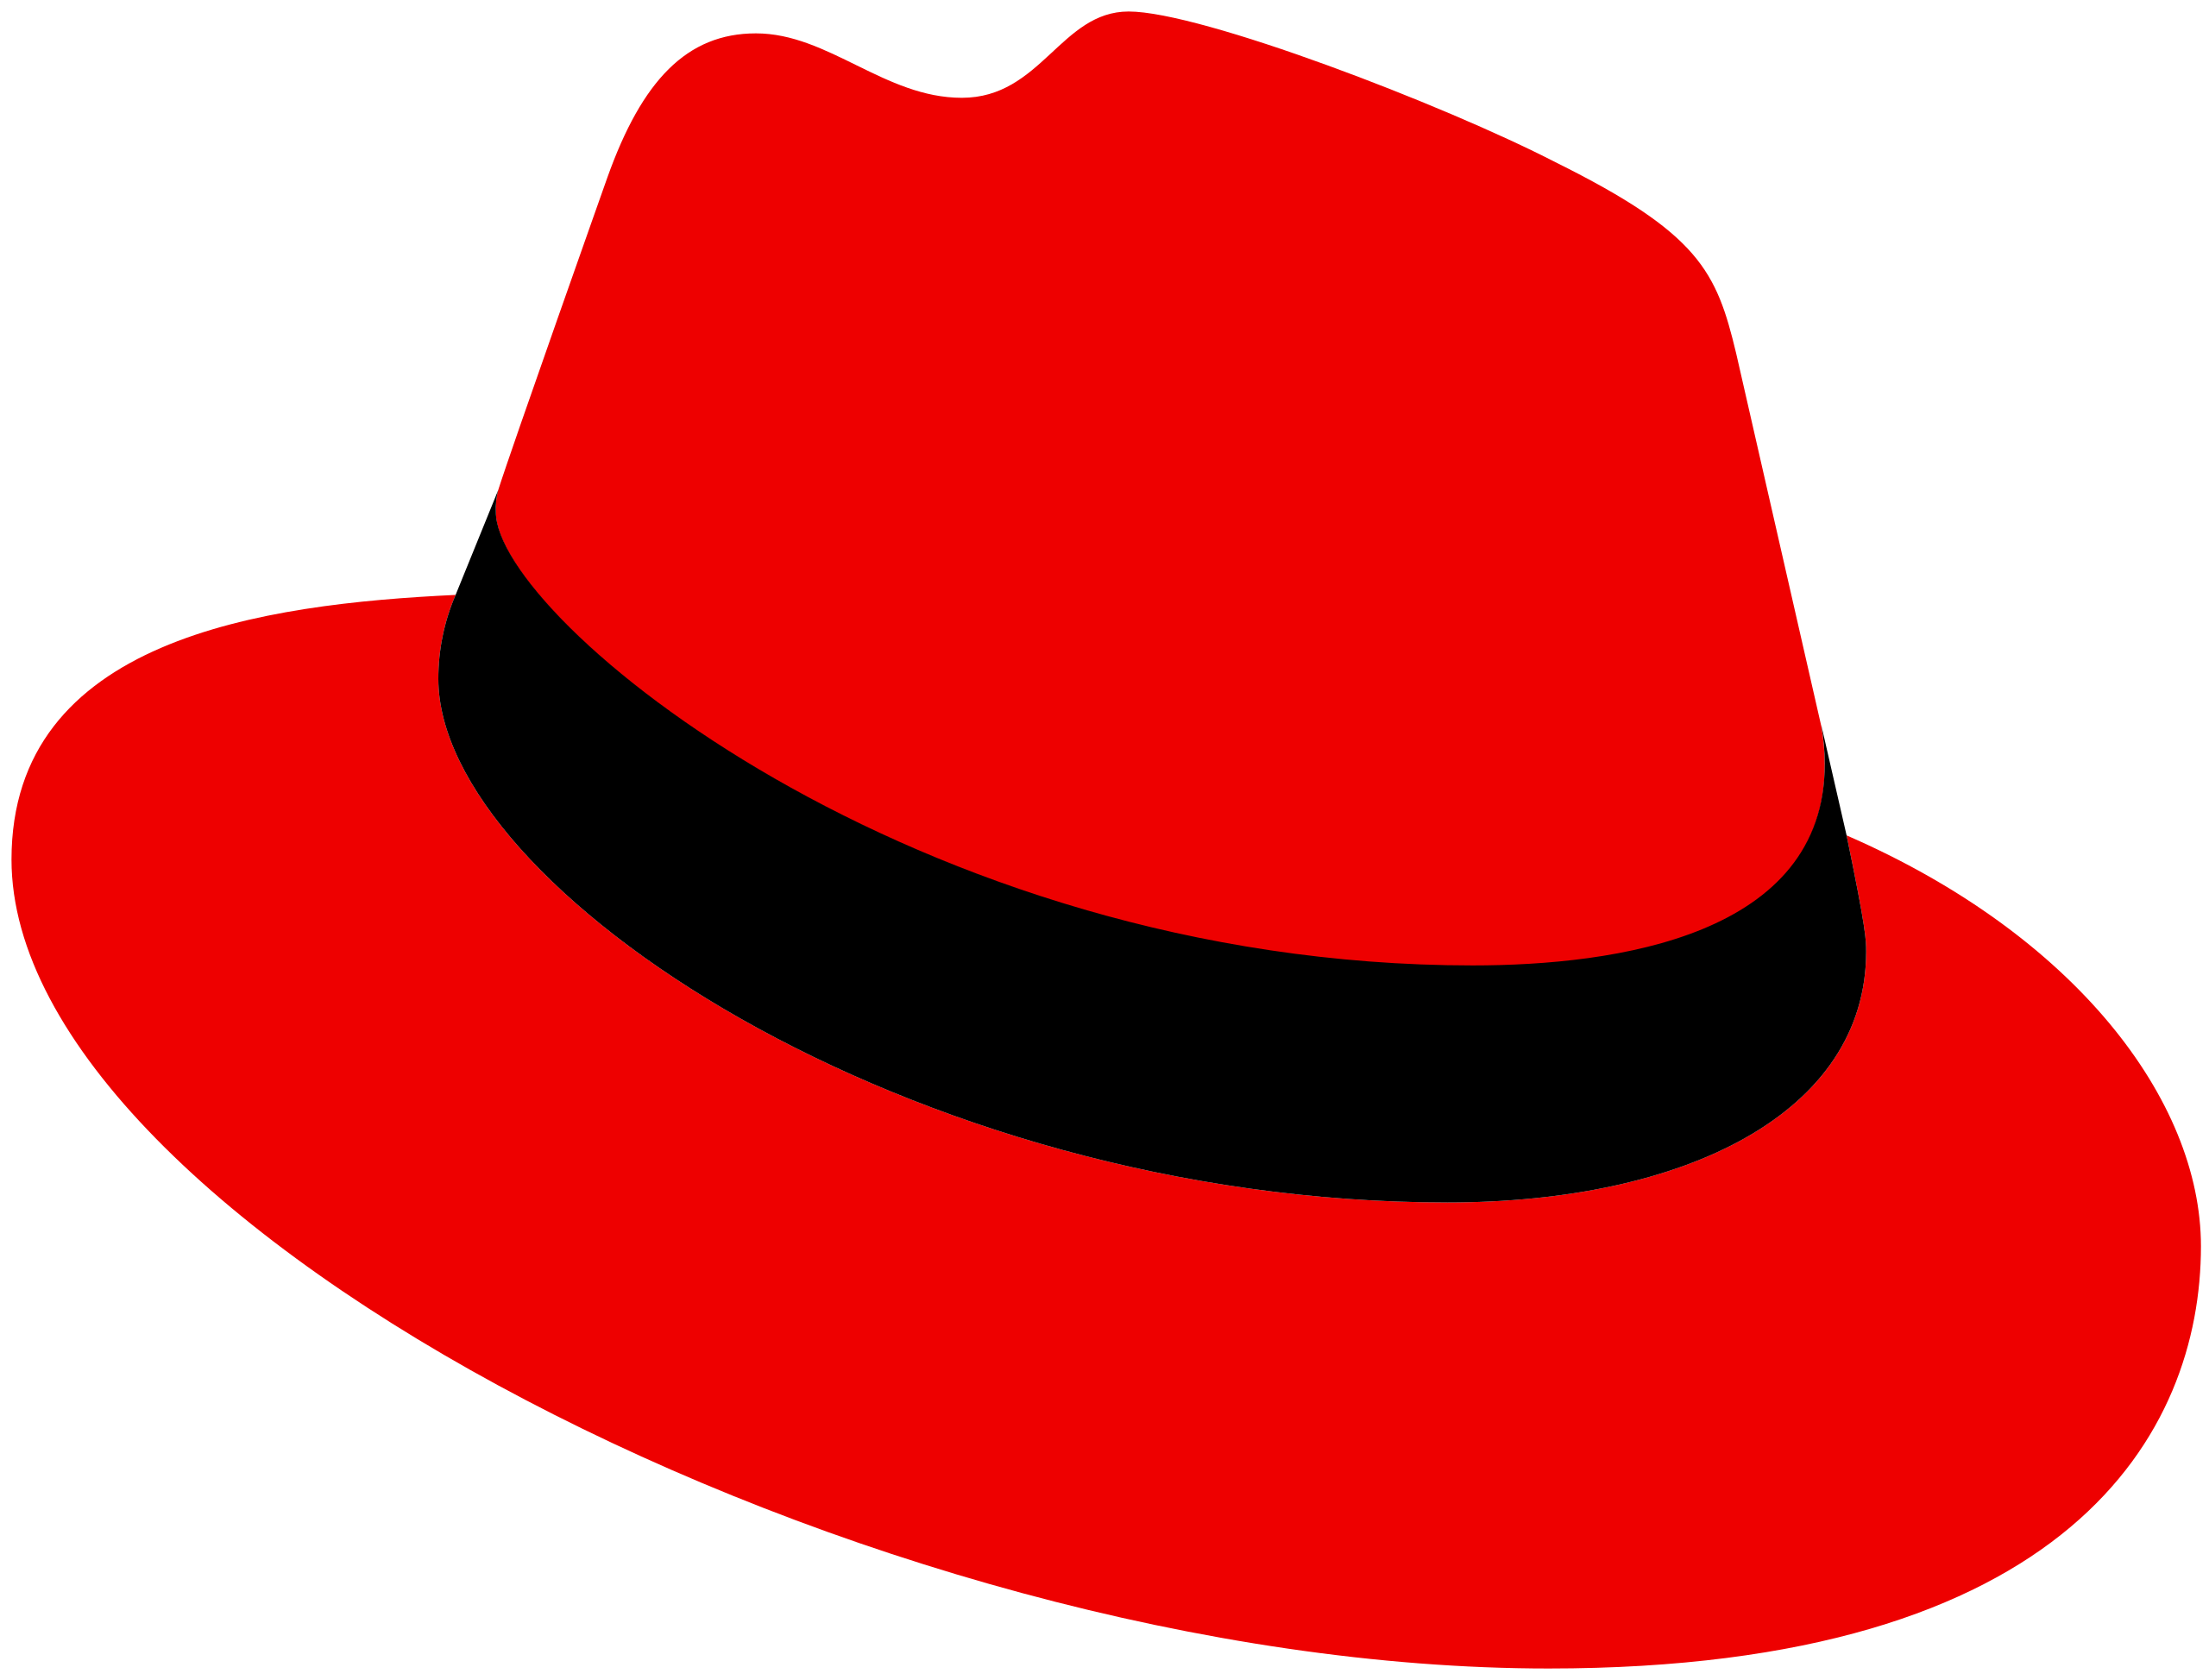 RedHat Linux logo